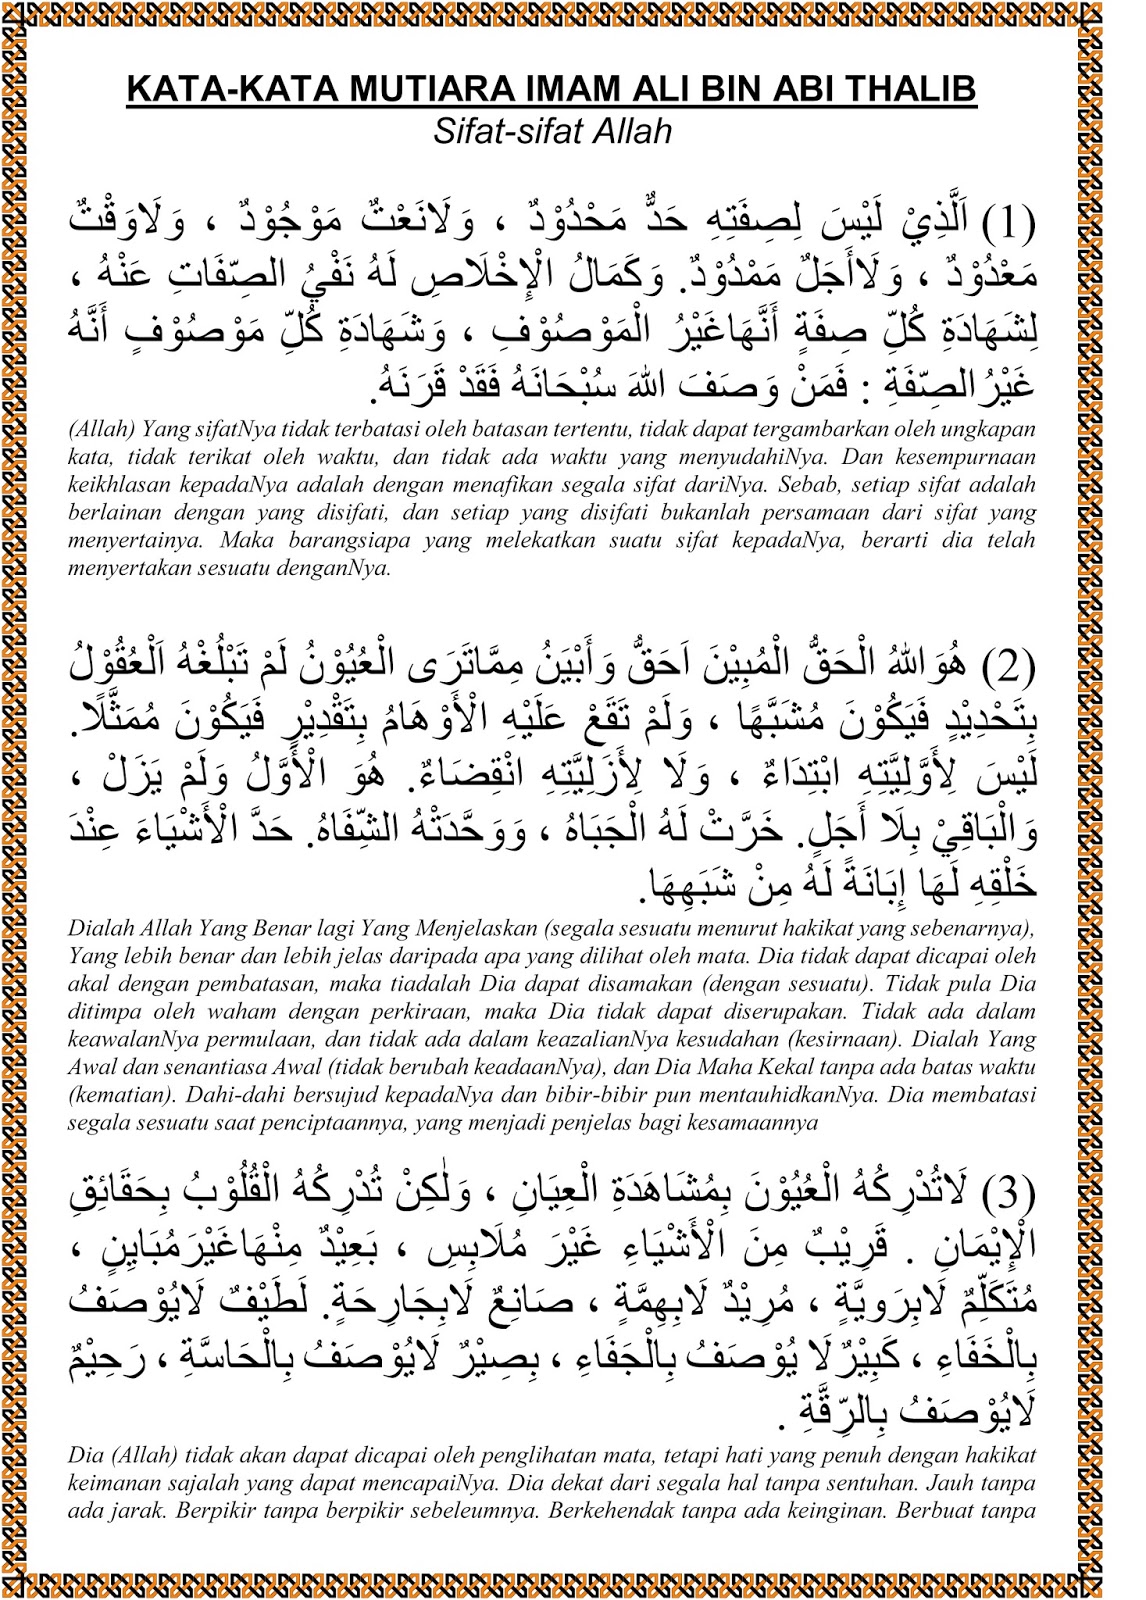 Sifat Sifat Allah Kata Kata  Mutiara  Imam Ali  bin  Abi  